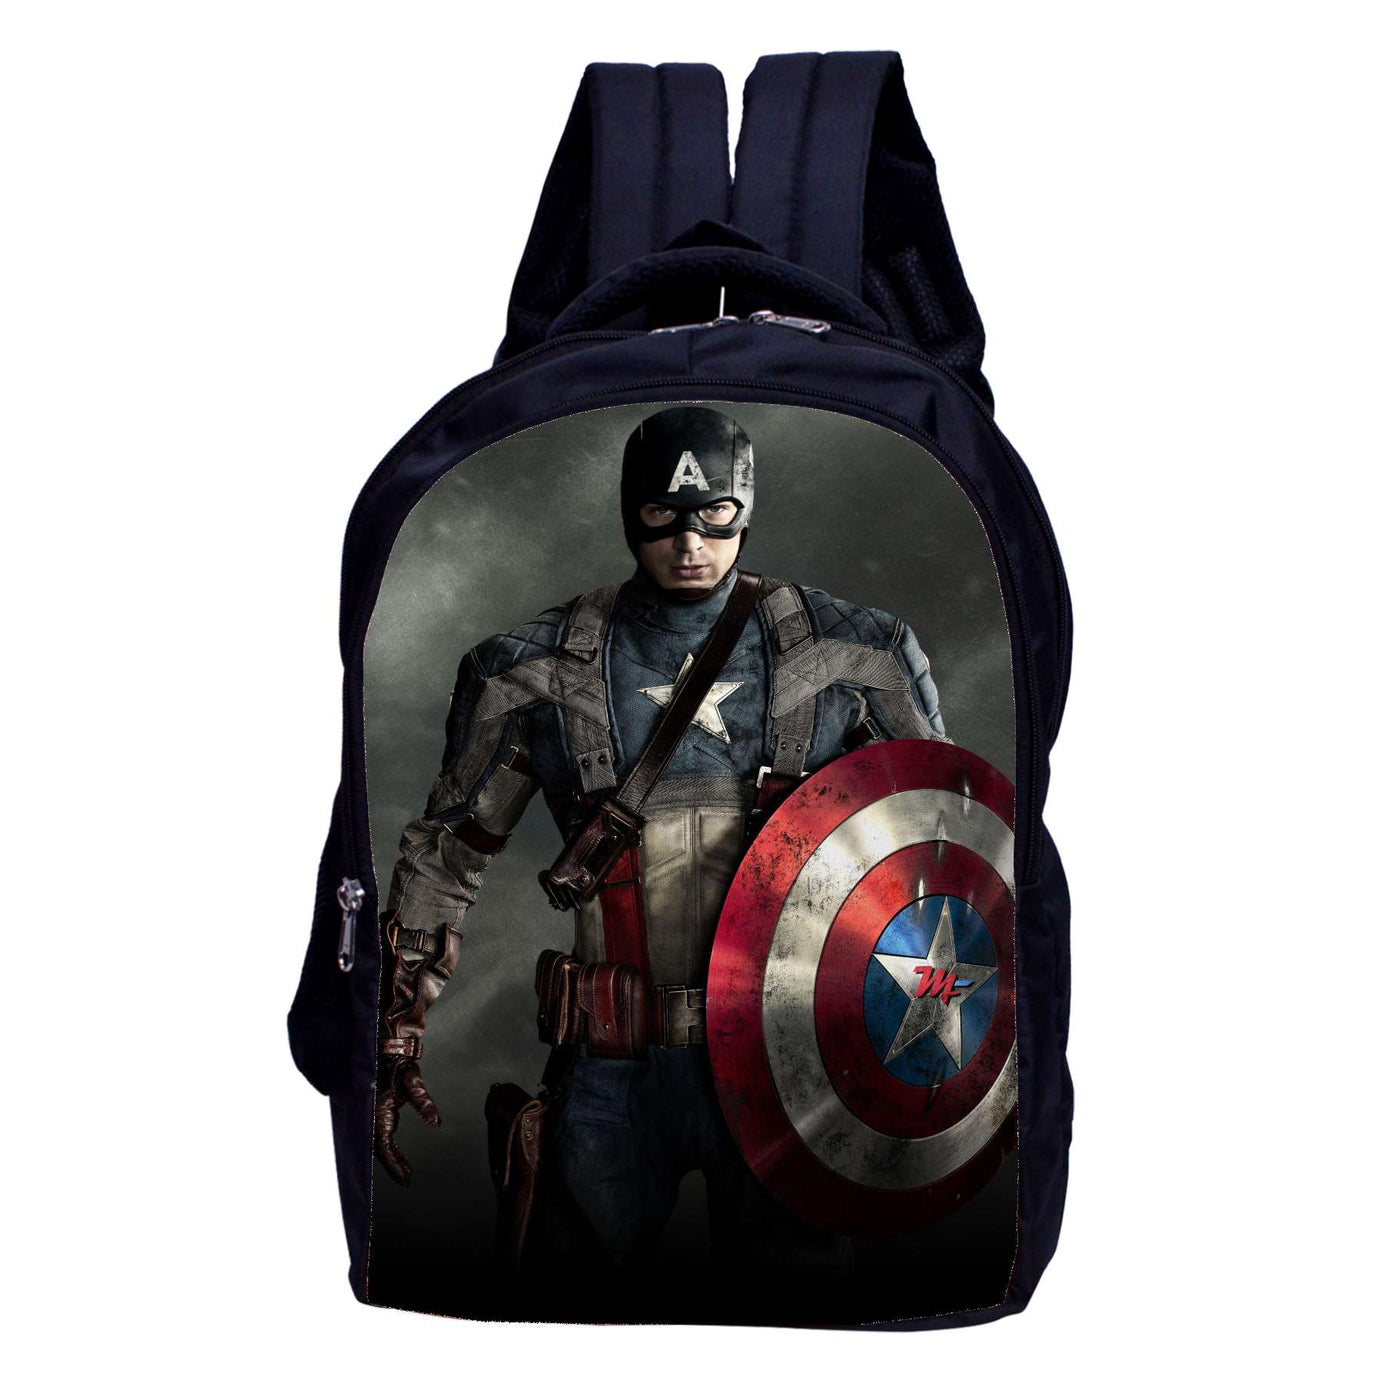 MY FAV Waterproof Backpack Digital Print Office Bag School Backpack for Boys Girls